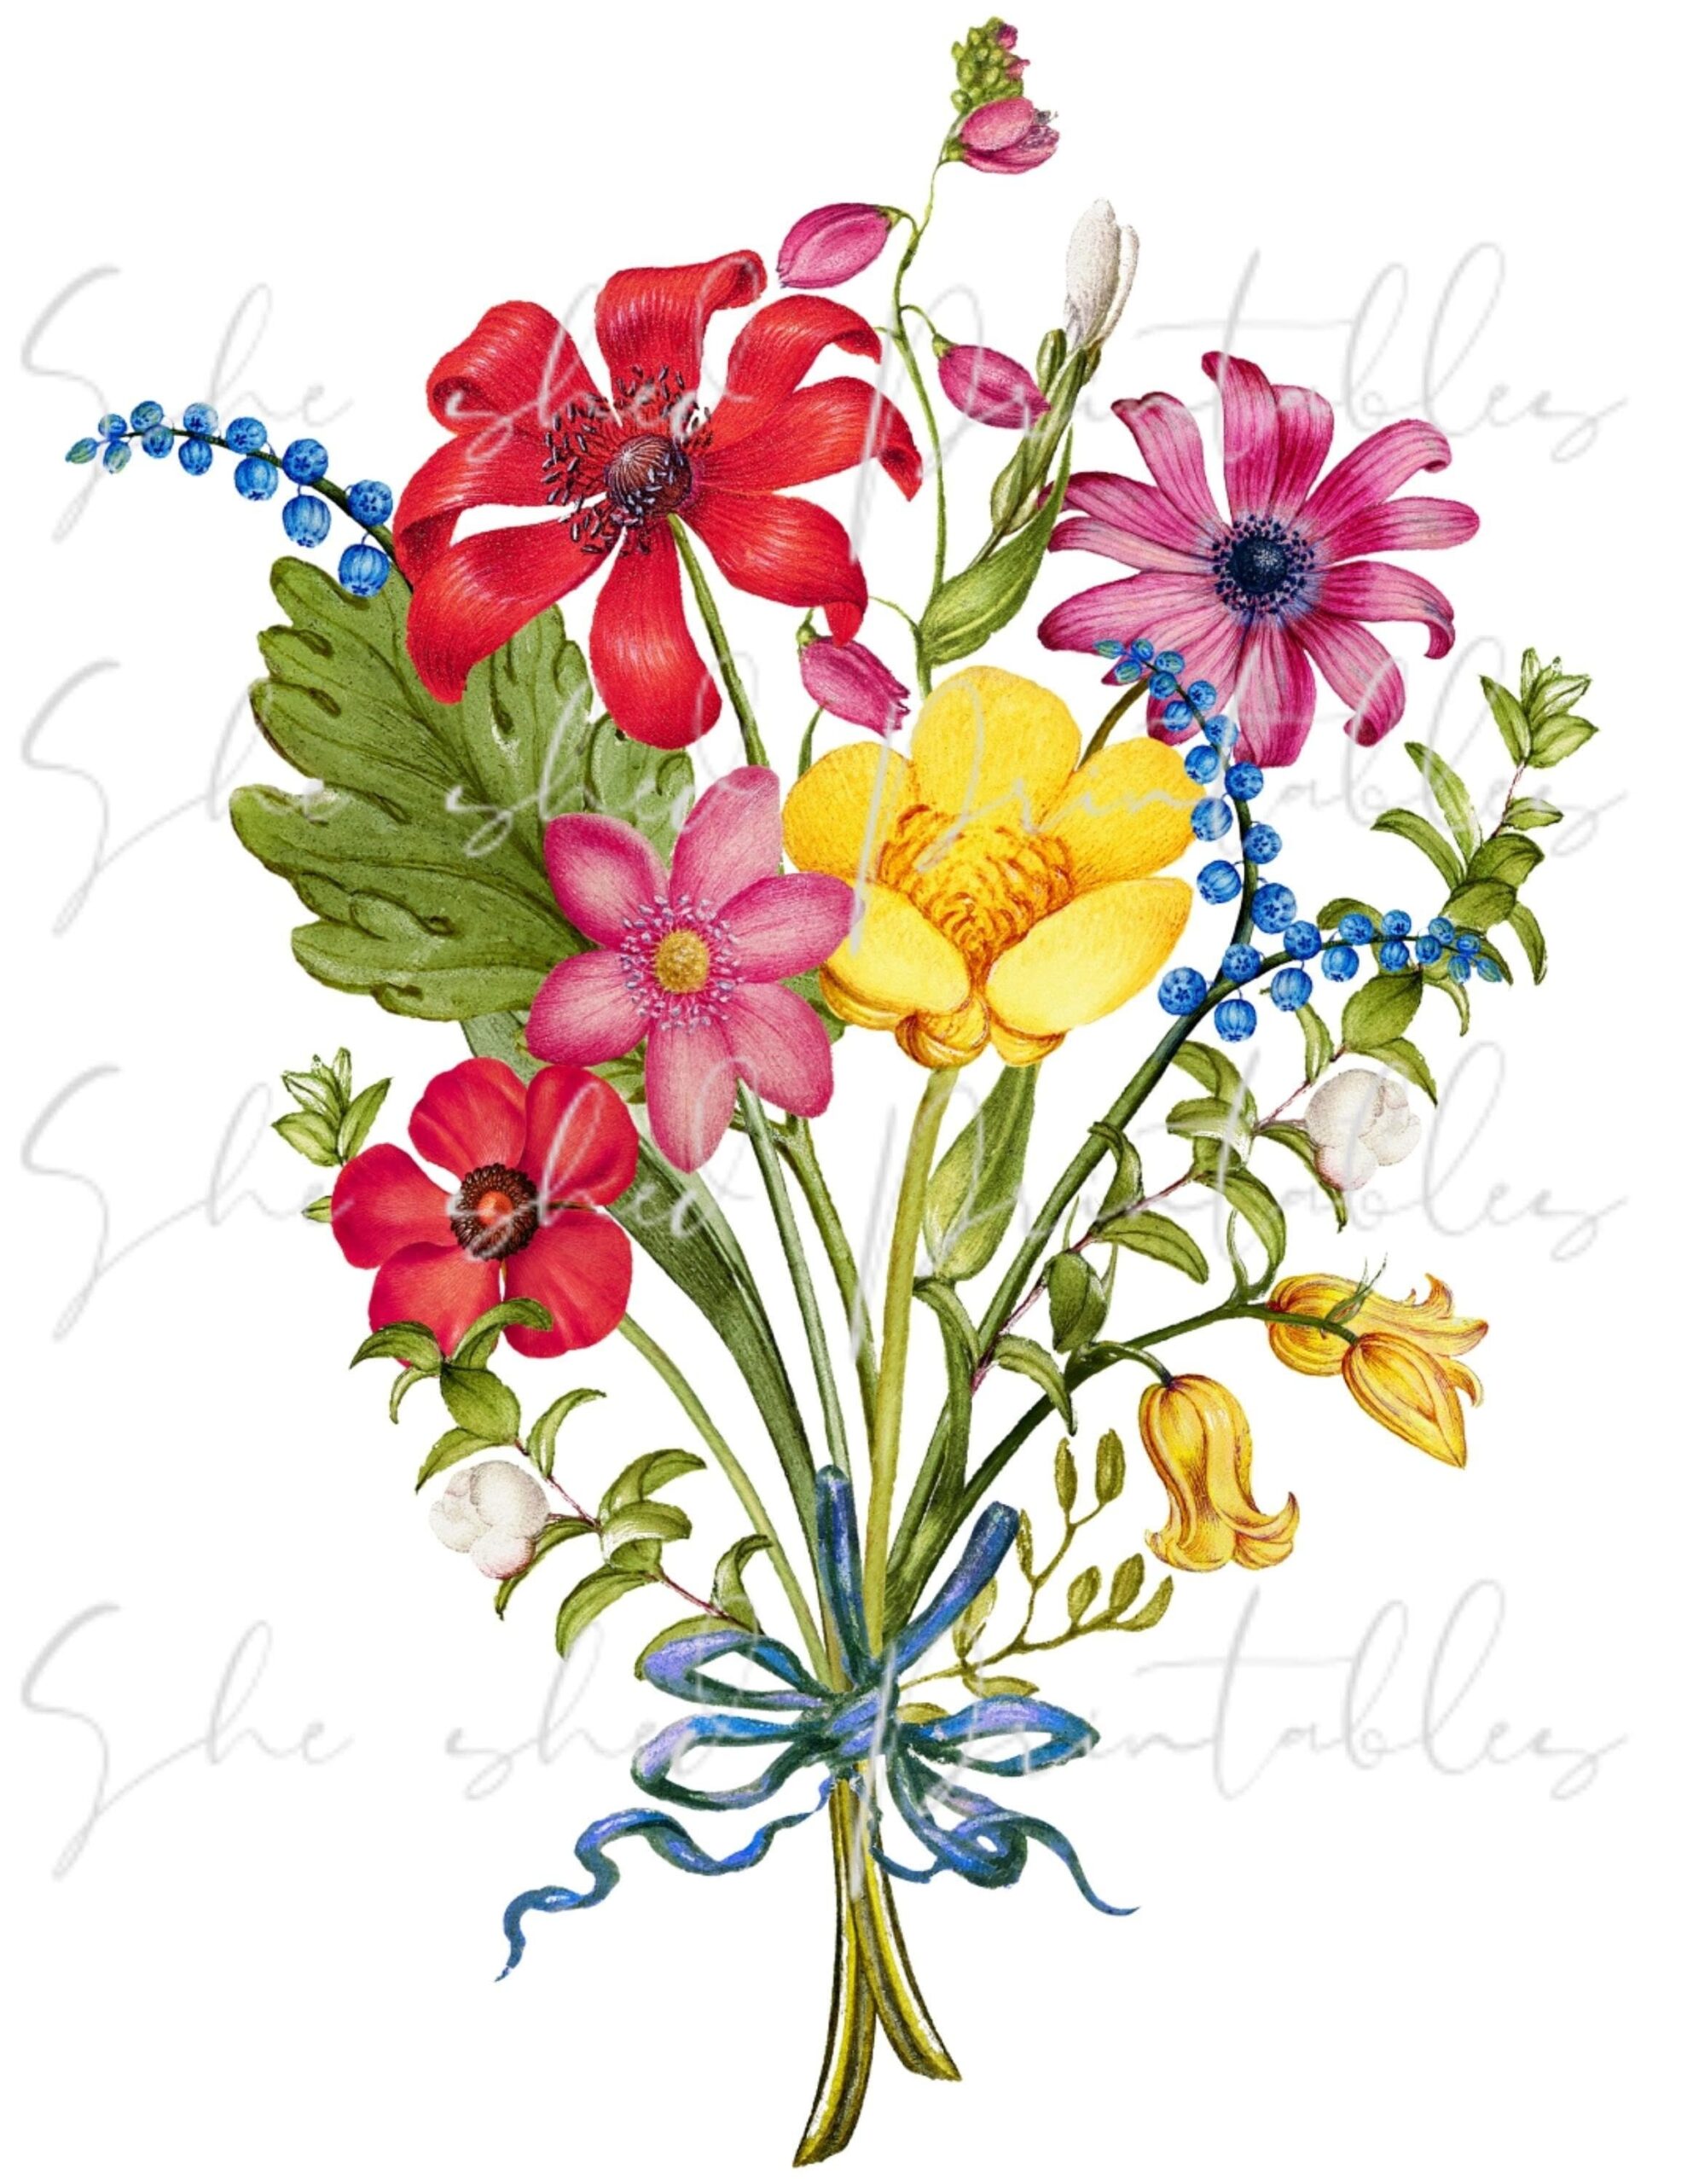 Flower Bouquet Digital Download Image Vintage Printable Clipart DIY Crafts 1700 s PNG JPG Botanical Floral Spring Bouquet Etsy